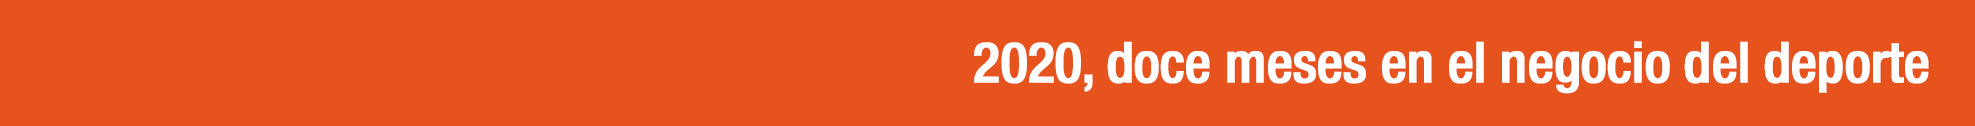 Especial 2020: El negocio del deporte en el año del Covid-19